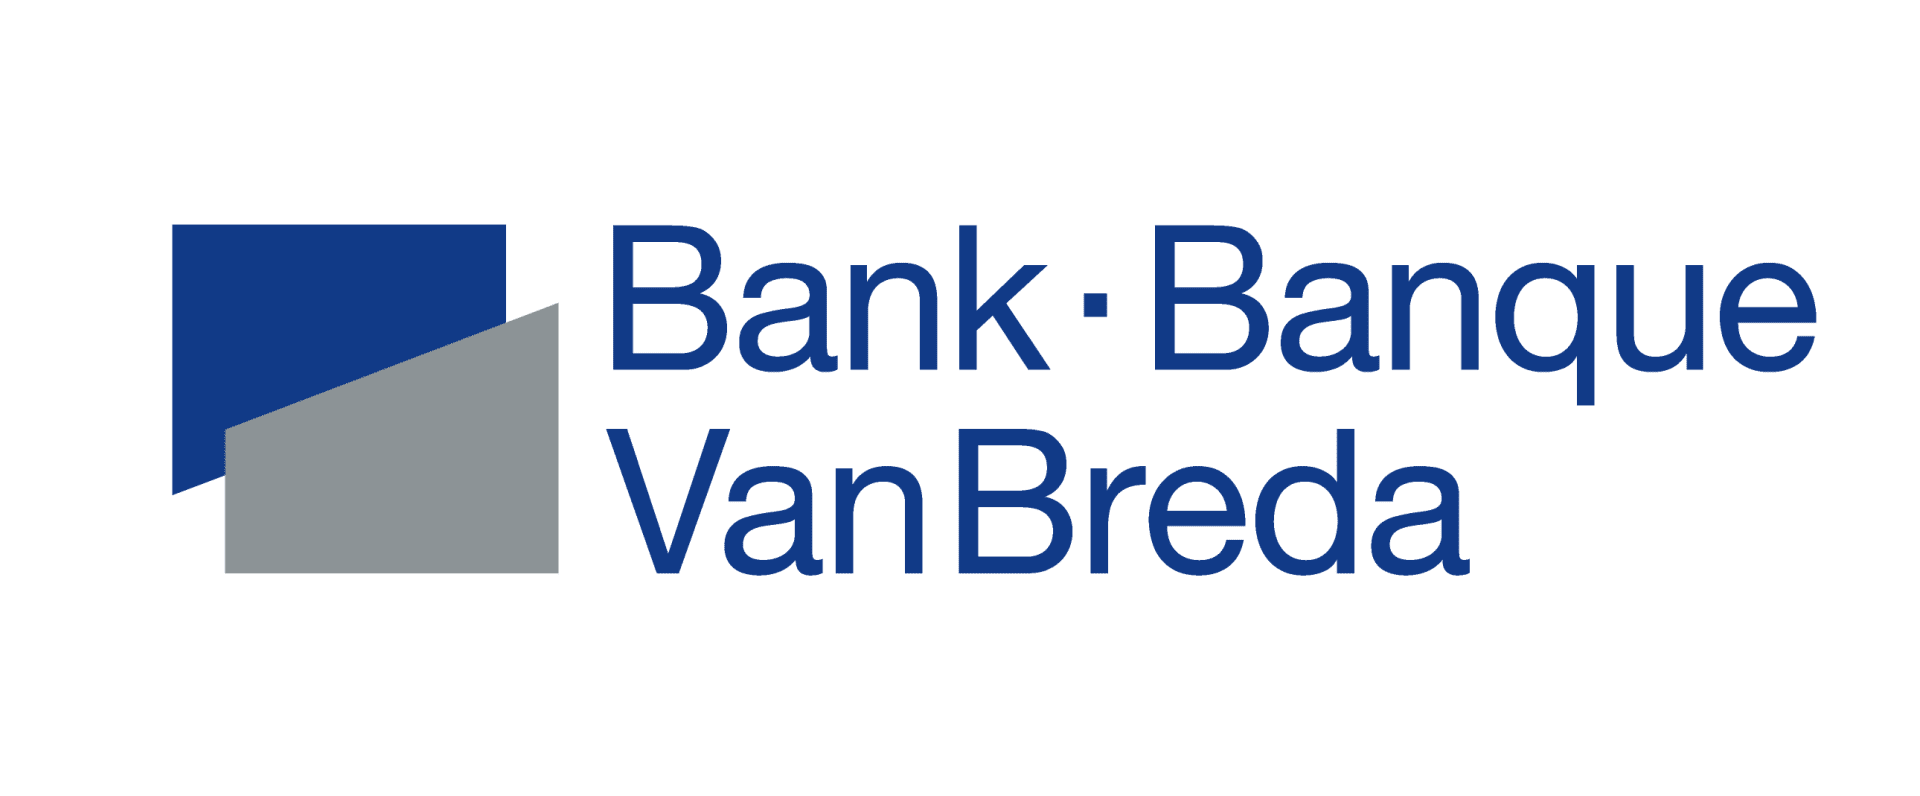 Bank/Banque Van Breda logo